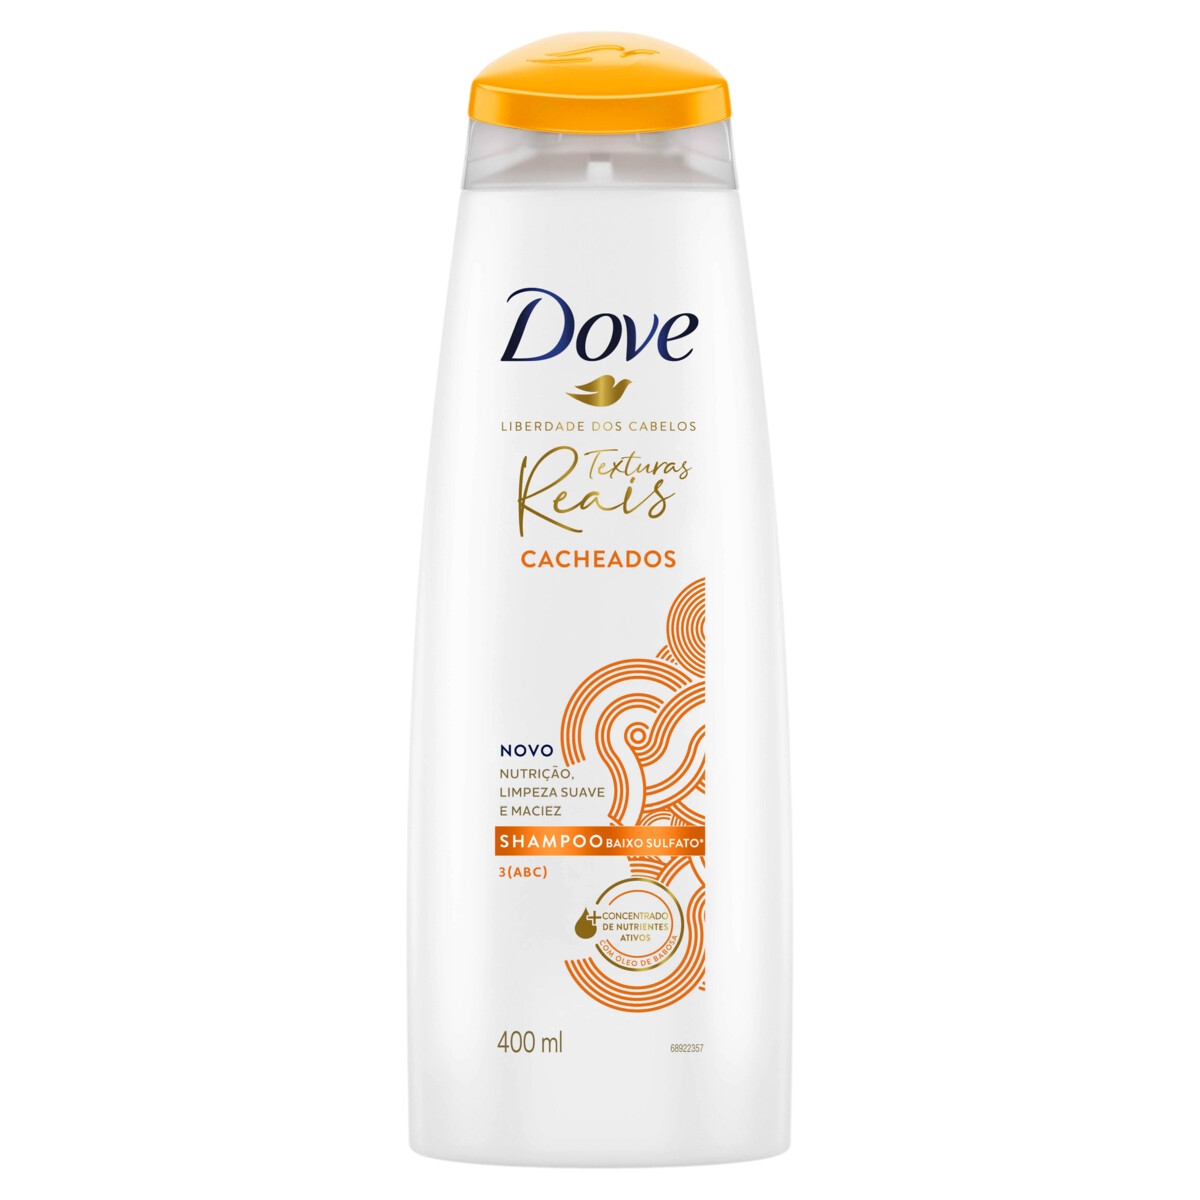 Shampoo Dove Texturas Reais Cacheados Óleo de Babosa 400ml 400ml